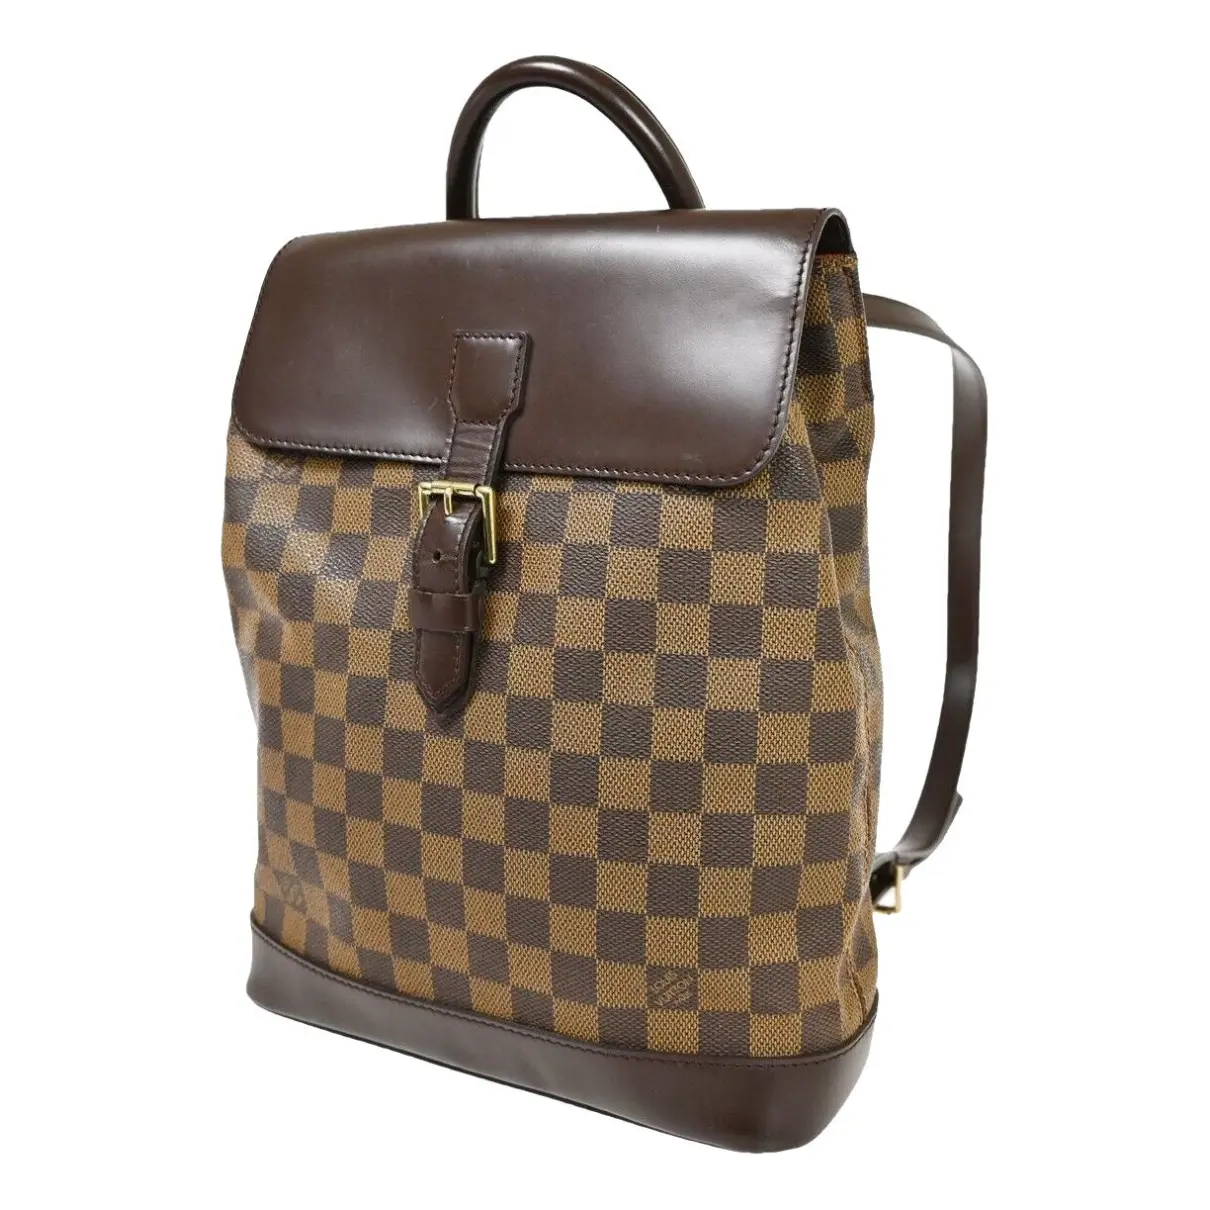 Soho backpack Louis Vuitton